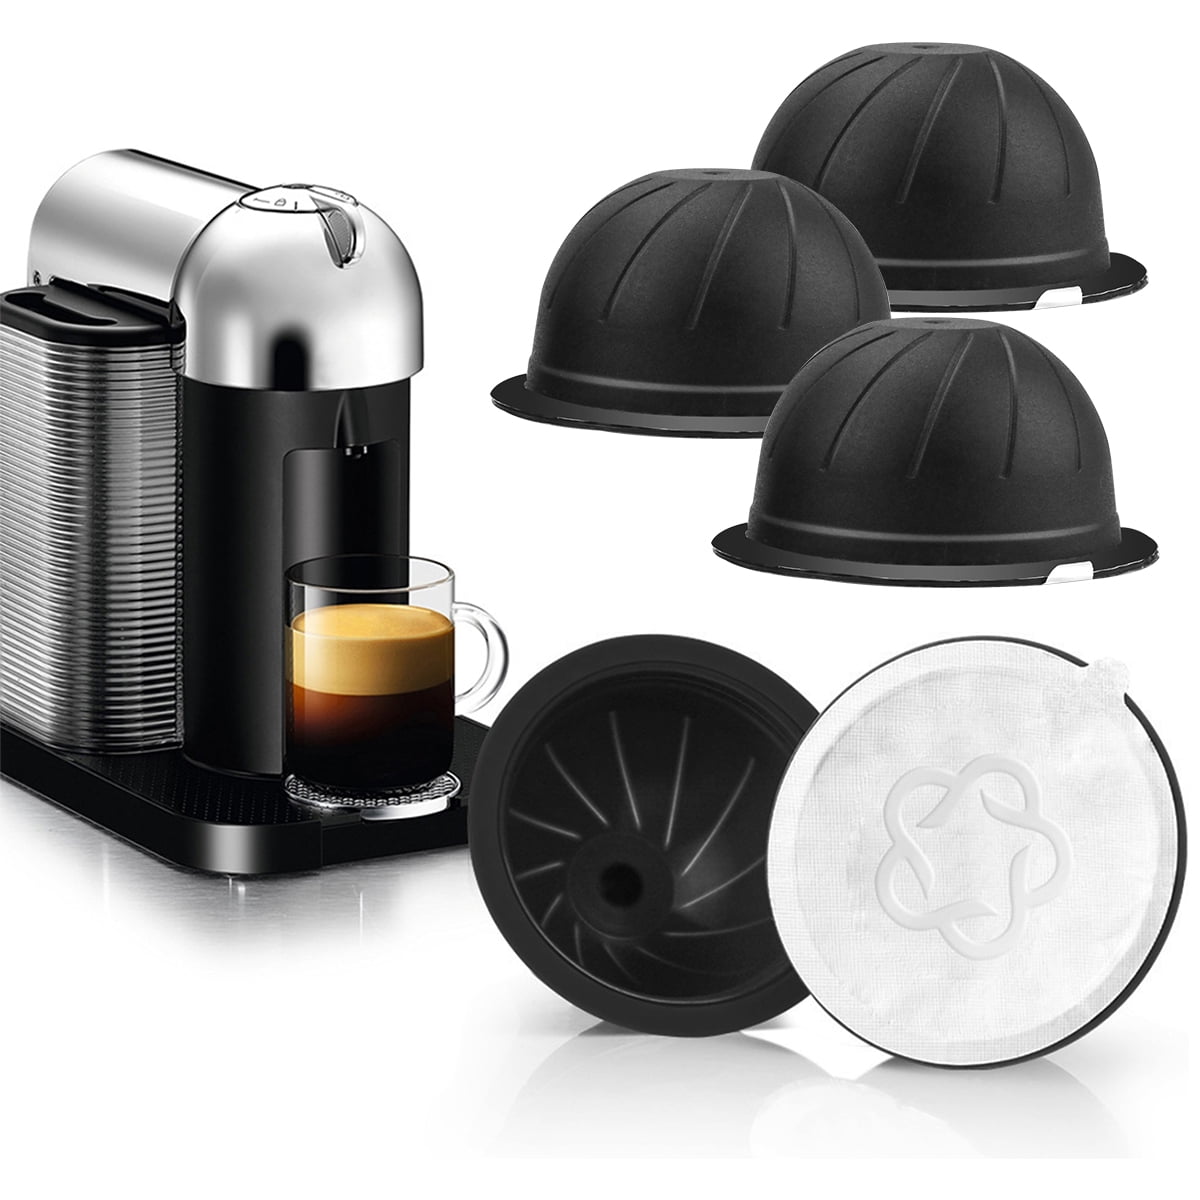  Cápsulas Vertuo reutilizables (5 unidades), cápsula de café  recargable para cápsulas Vertuoline y Vertuo, cápsulas de café de 7.8 fl oz  compatibles con máquina de café Nespresso Vertuo, con 2 tapas